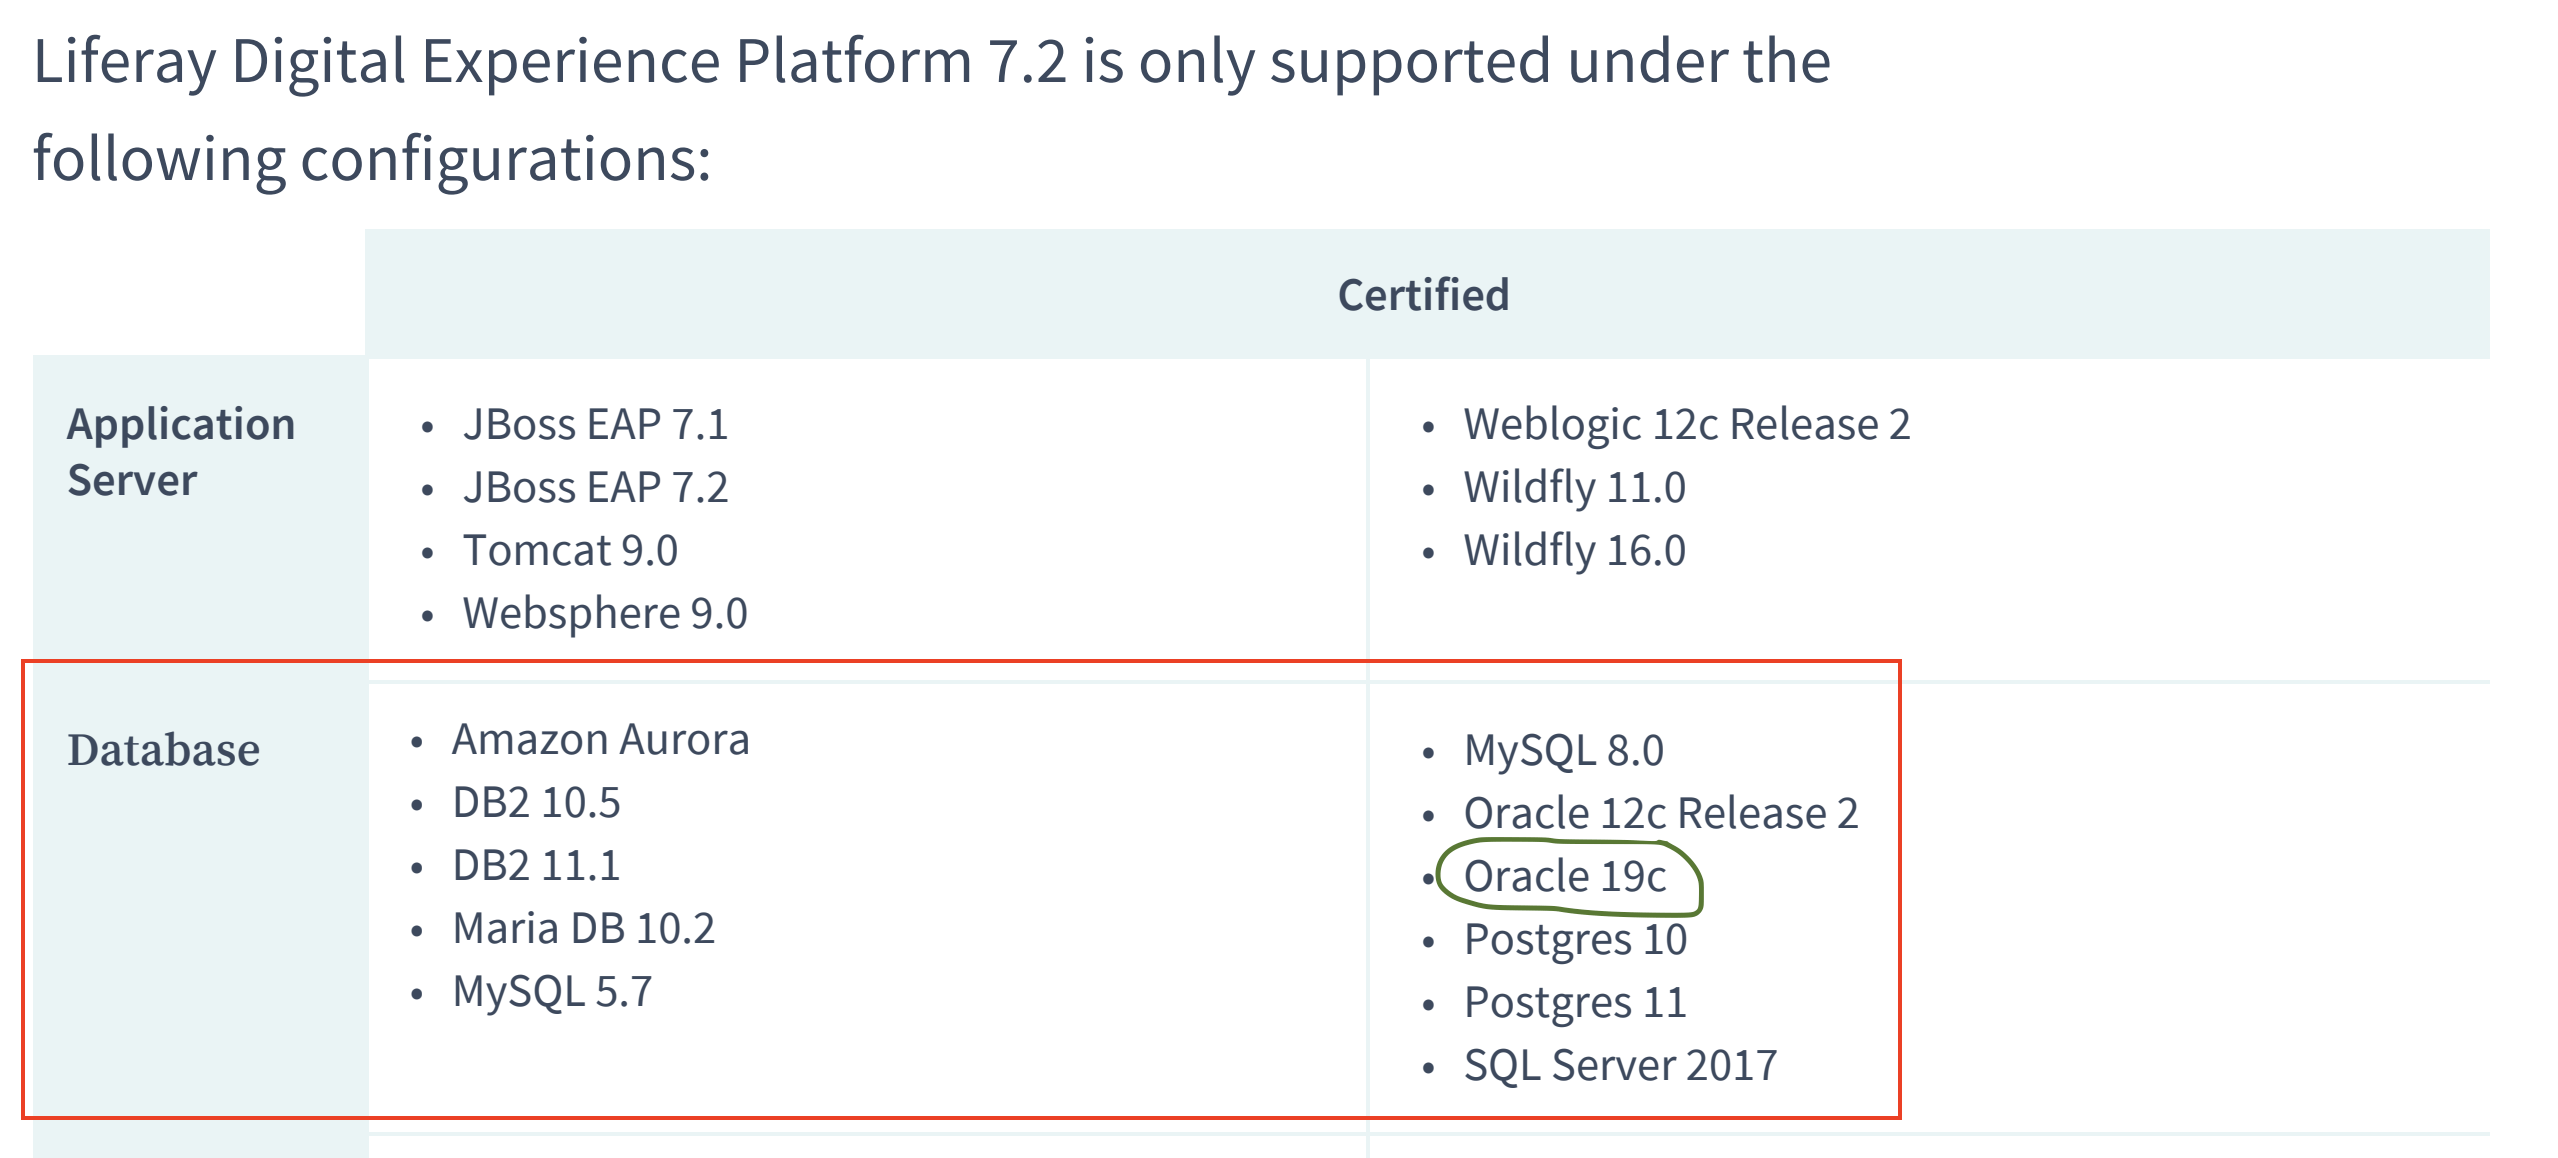 Dica - Oracle Client 12c / 19c não abre instalador no windows 10 ou windows  11